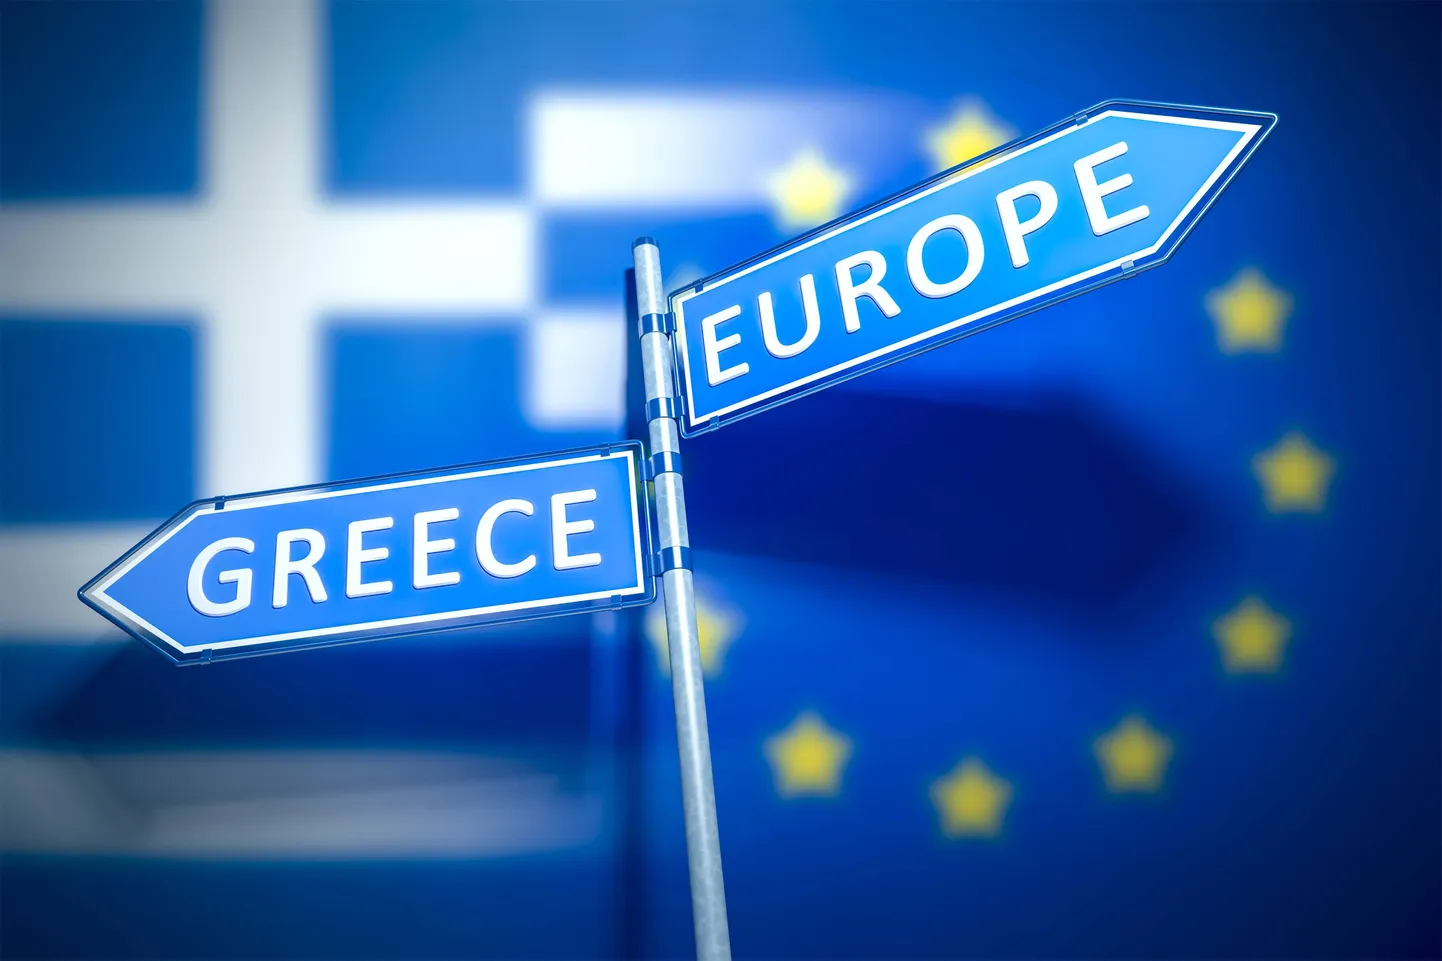 Kreeka ja Euroopa Liidu teed läksid laenukriisis lahku.